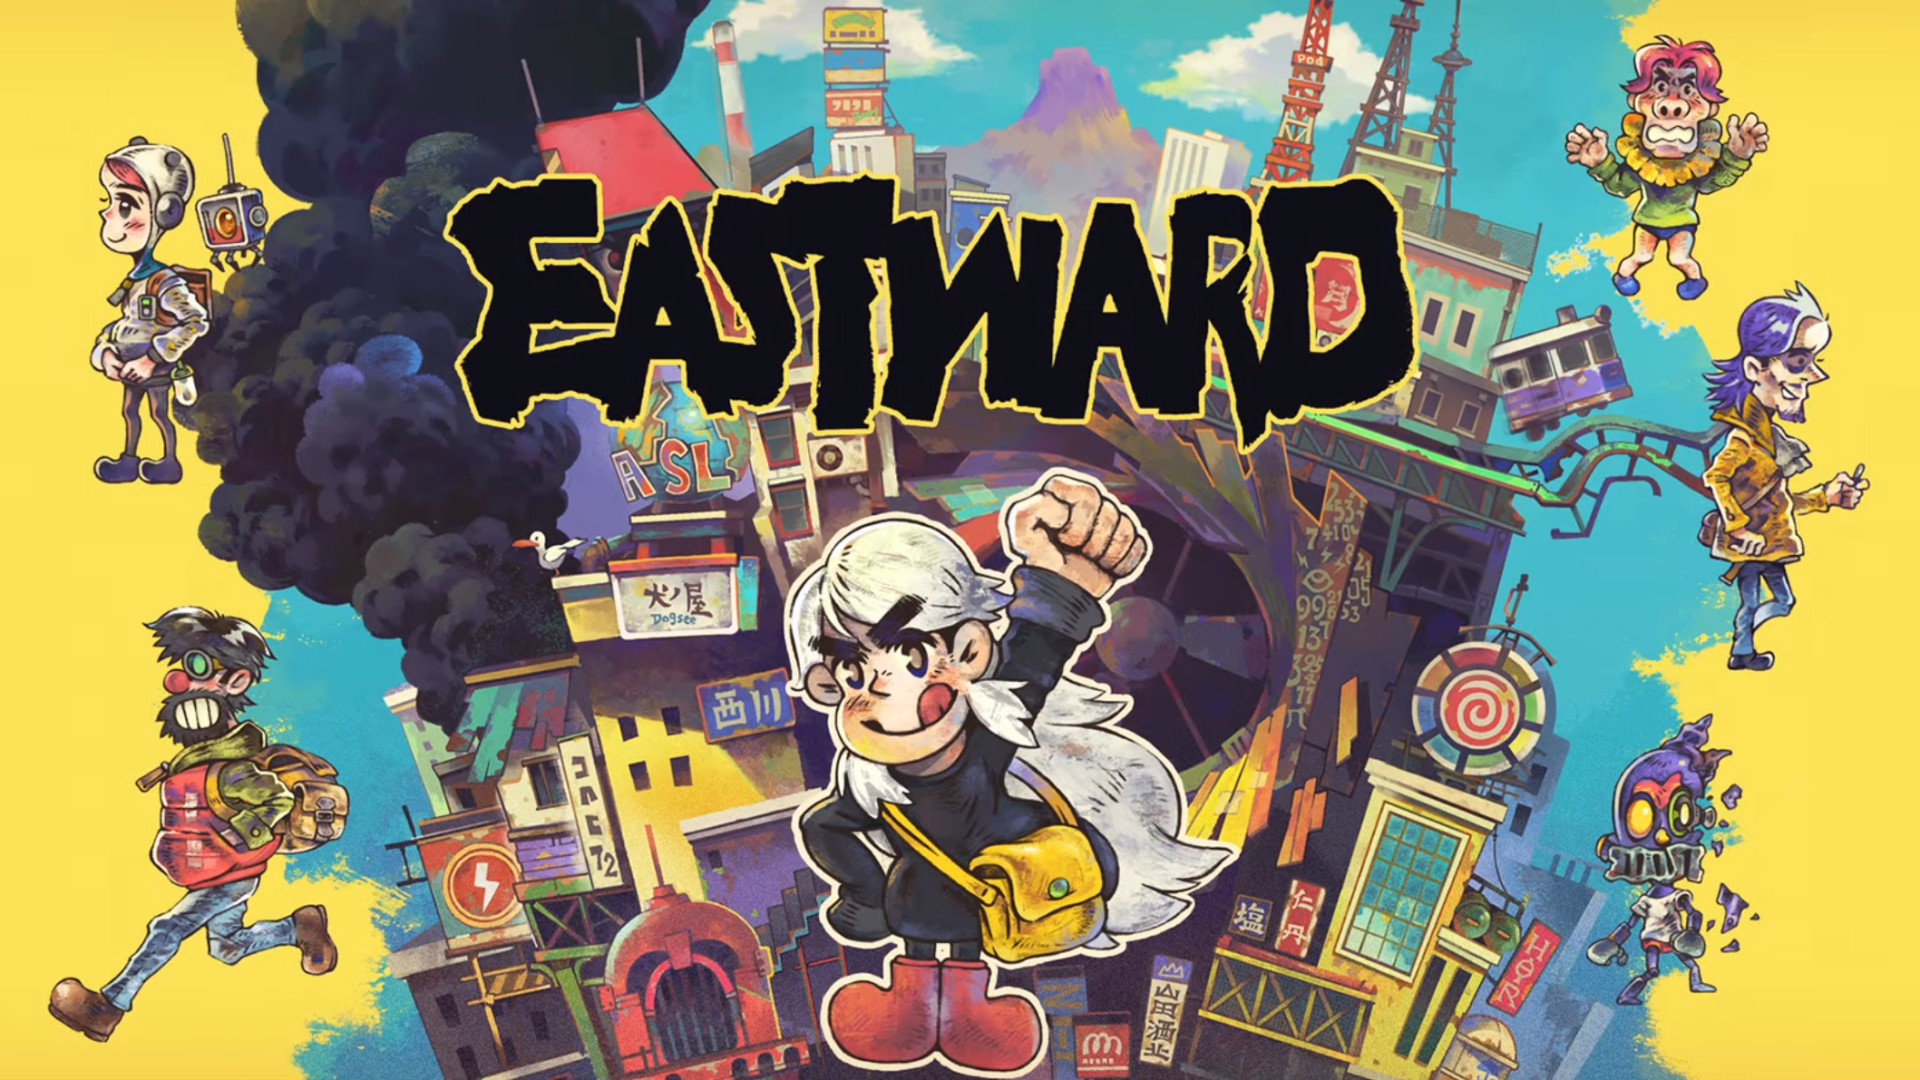 eastward release date